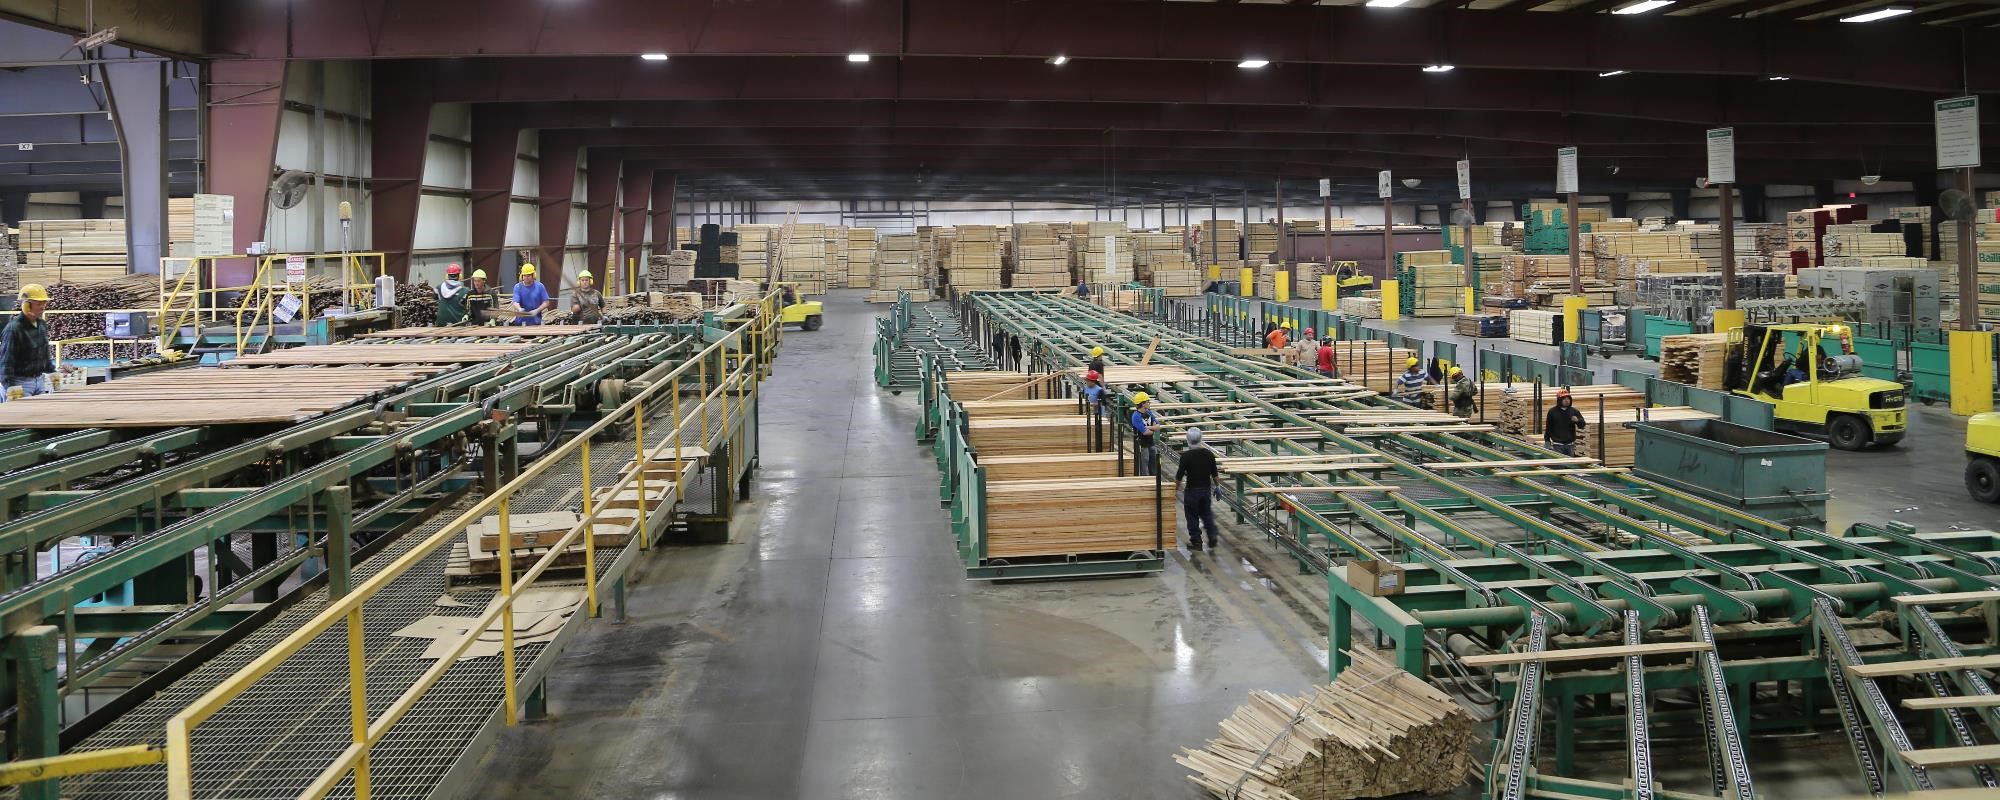 From Logs to Lumber - Sorting & Warehousing